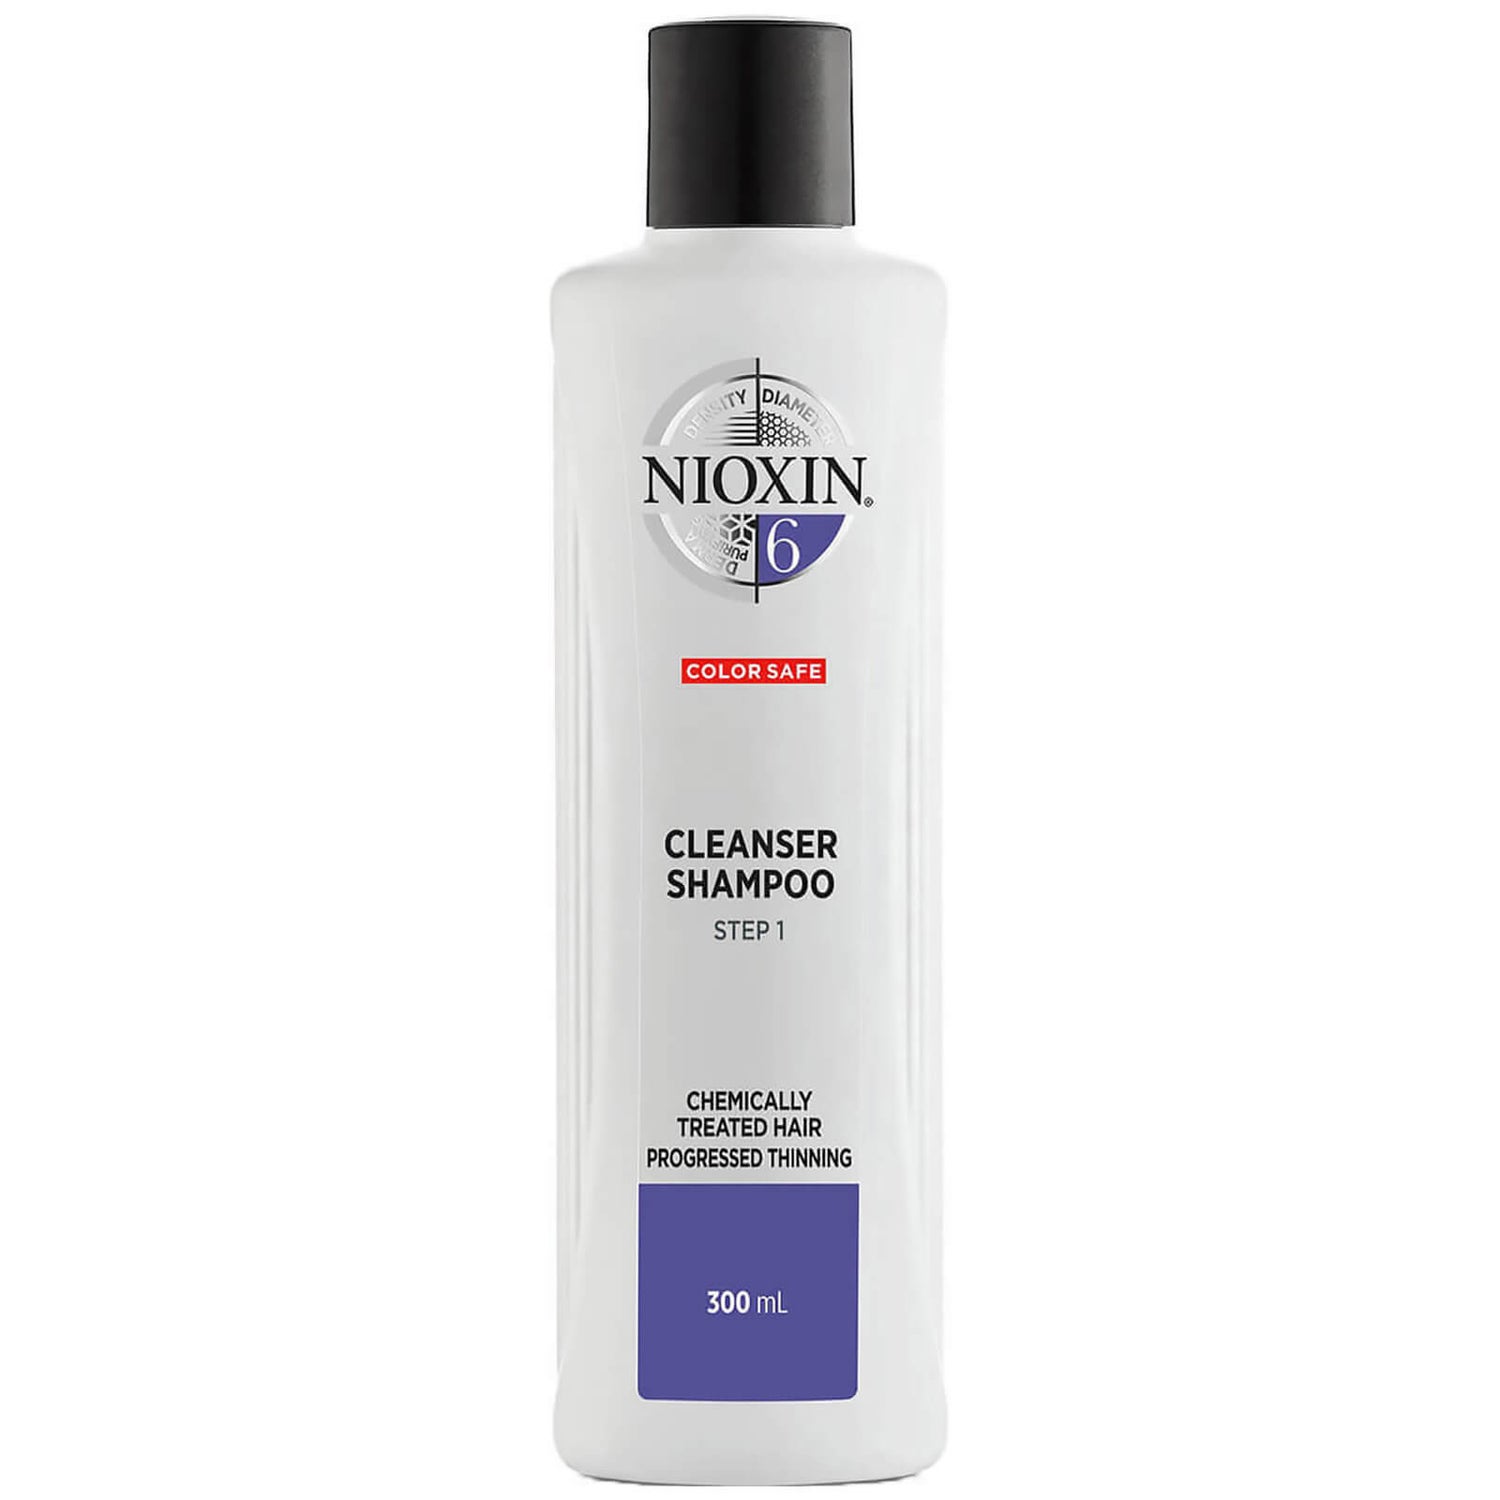 NIOXIN třídílný čisticí šampon System 6 pro chemicky ošetřené vlasy s postupným řídnutím 300 ml